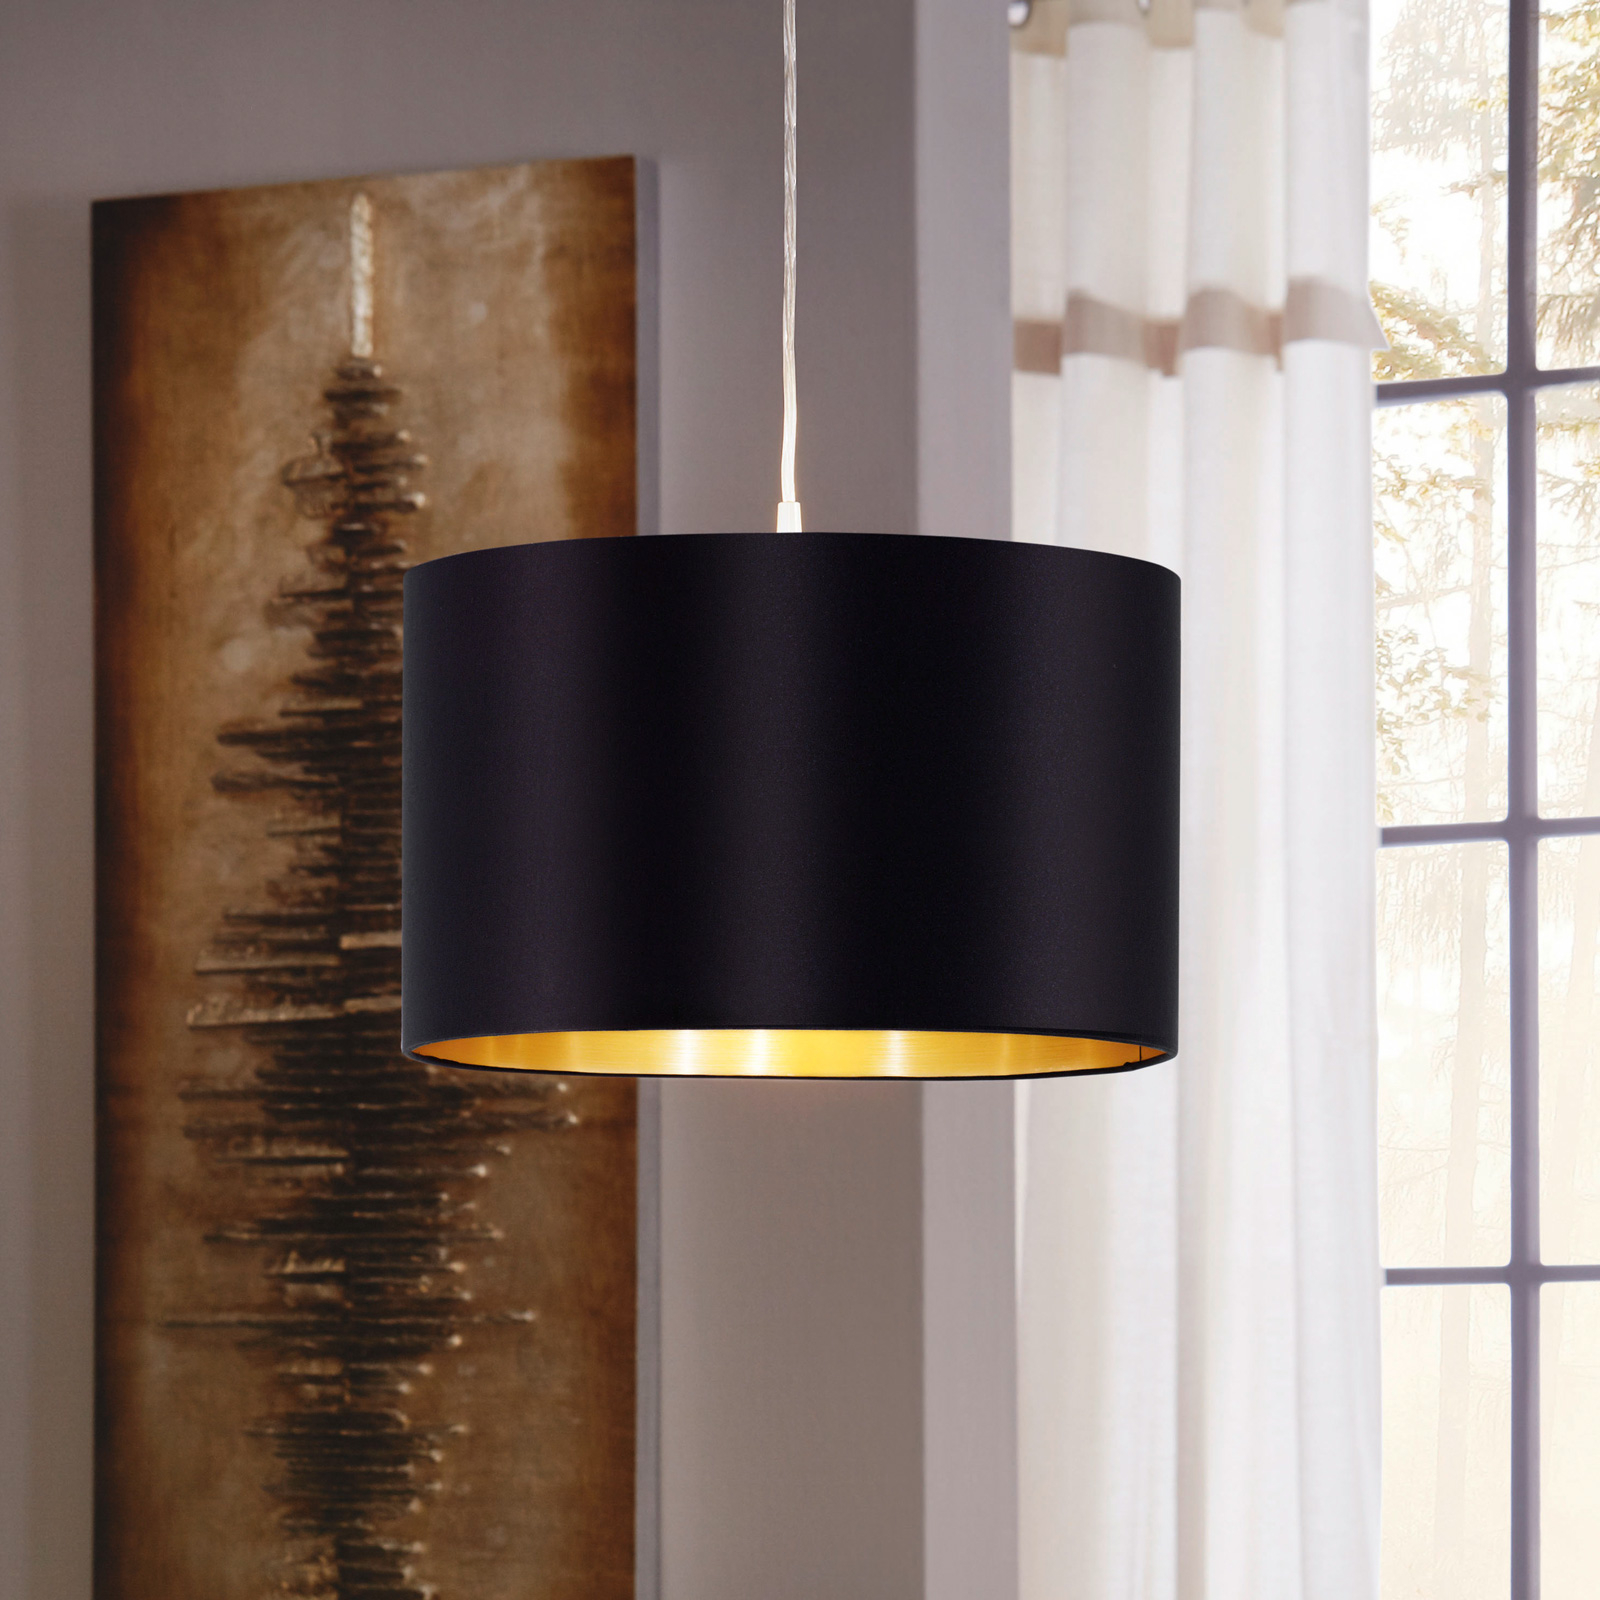 Lecio tekstilna viseća svjetiljka, 38 cm, crna